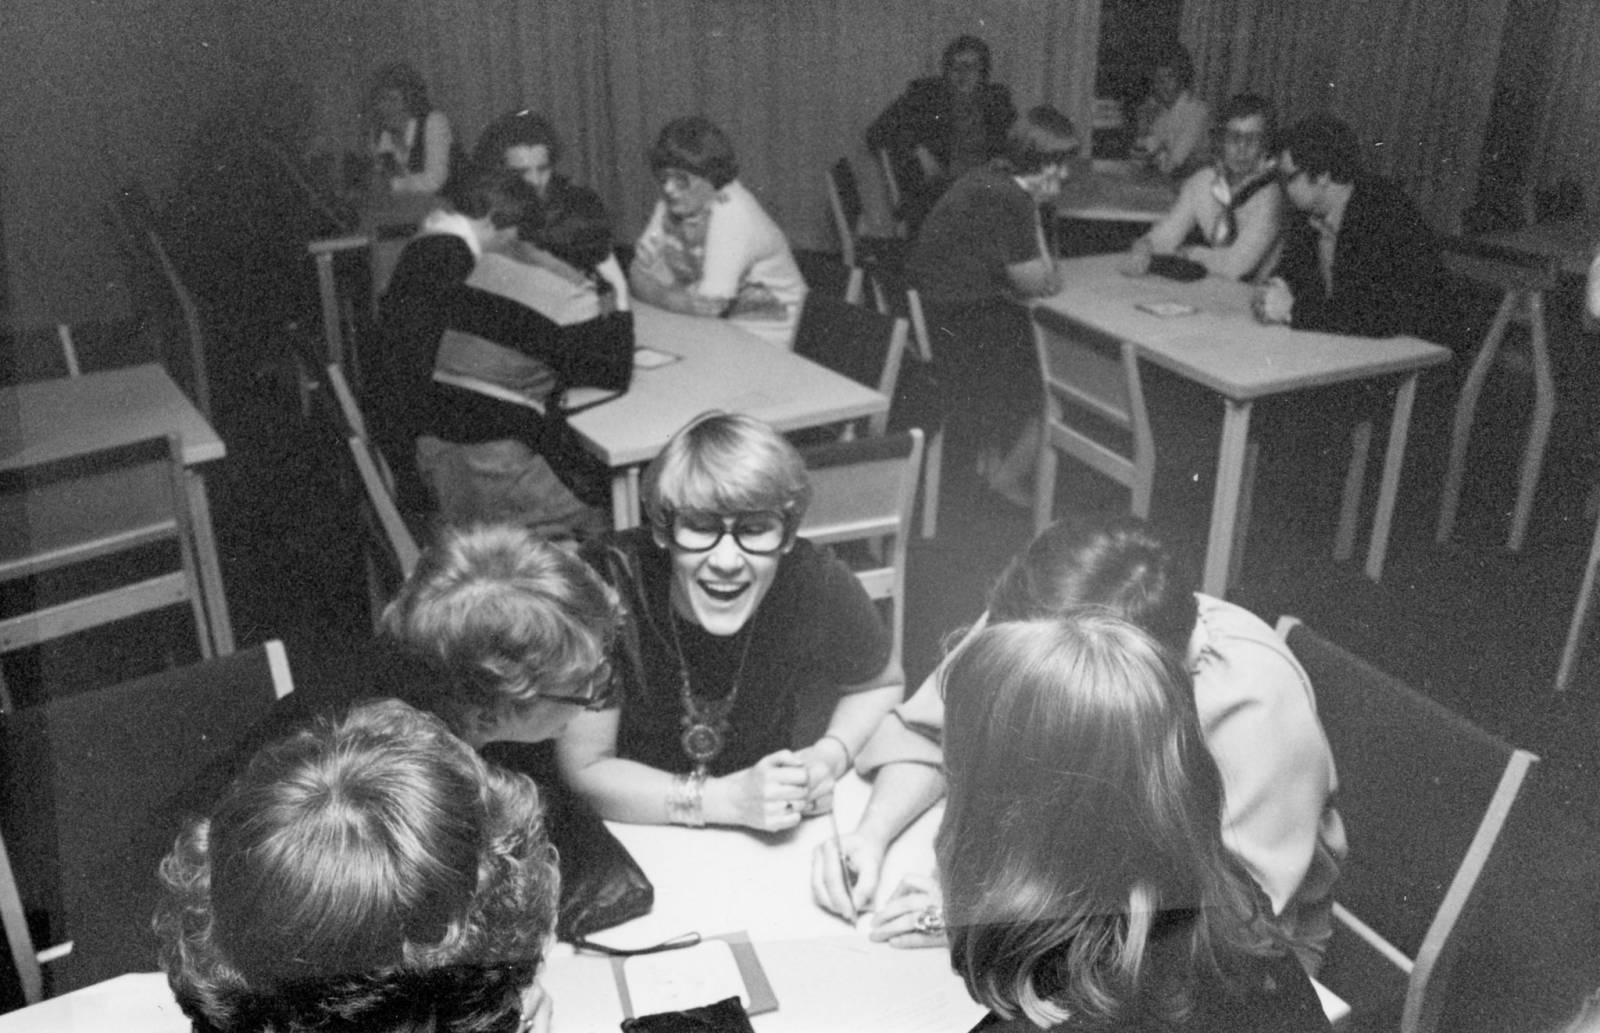 Mustavalkoisessa kuvassa joukko aikuisia ihmisiä istuu pienissä ryhmissä kolmen pöydän ympärillä. Keskellä kuvaa on naurava, vaalea silmälasipäinen ihminen.